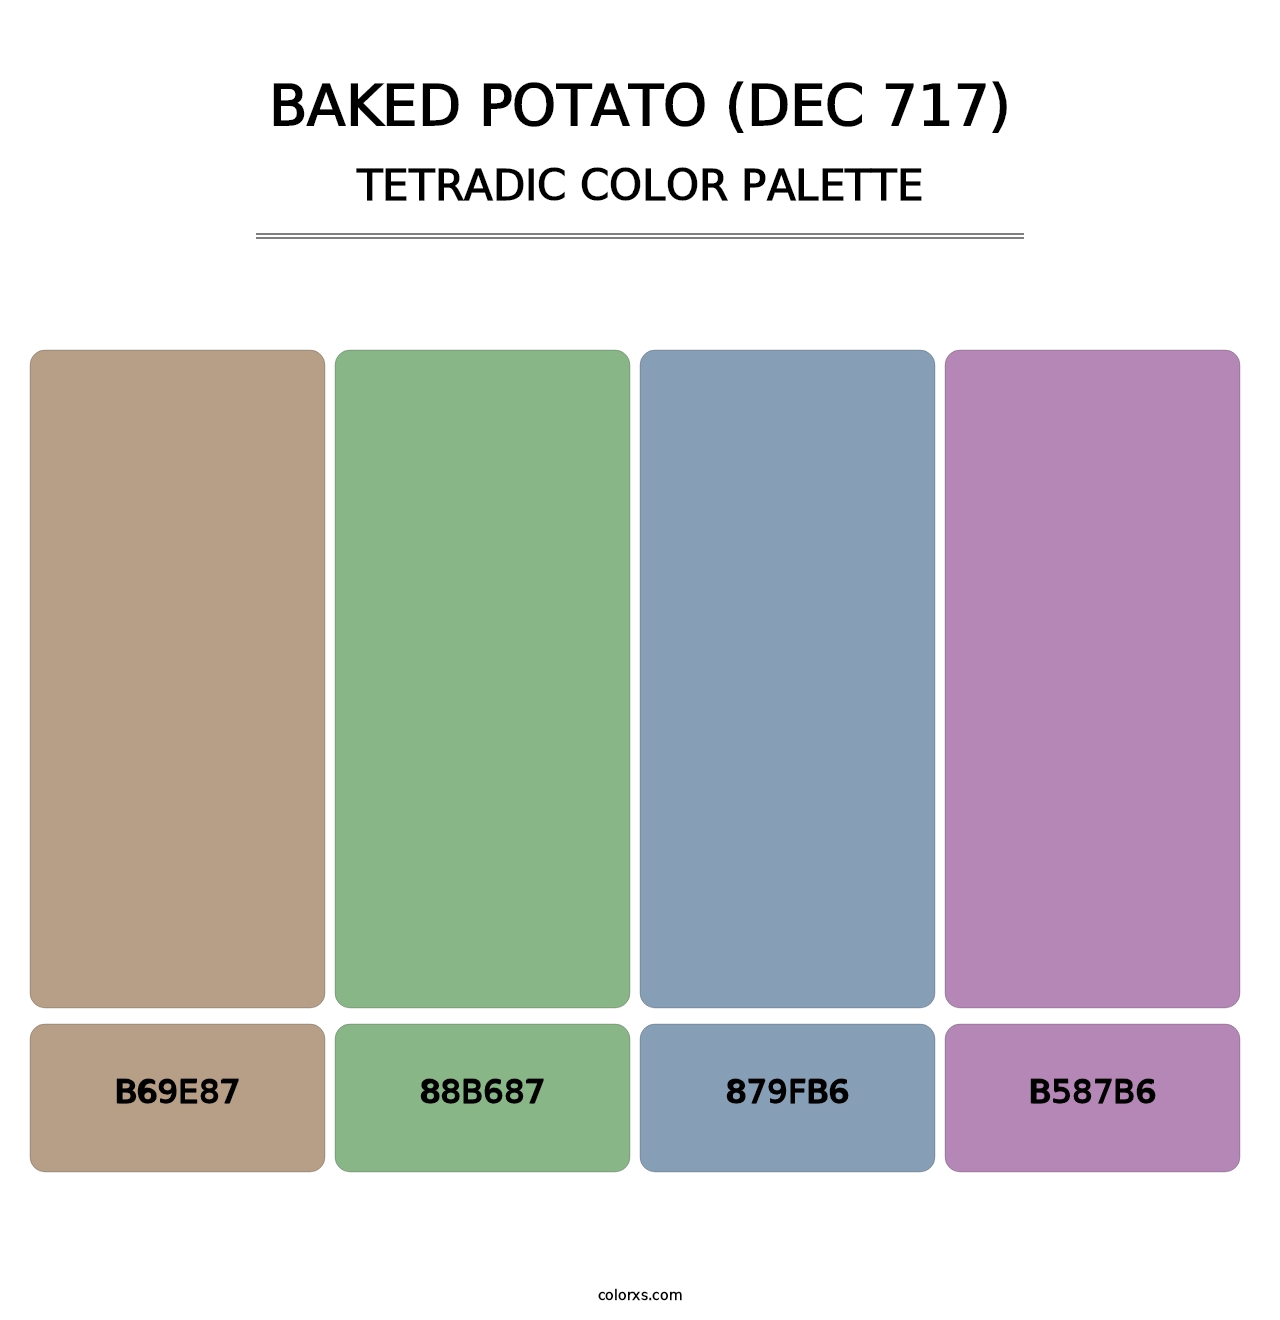 Baked Potato (DEC 717) - Tetradic Color Palette